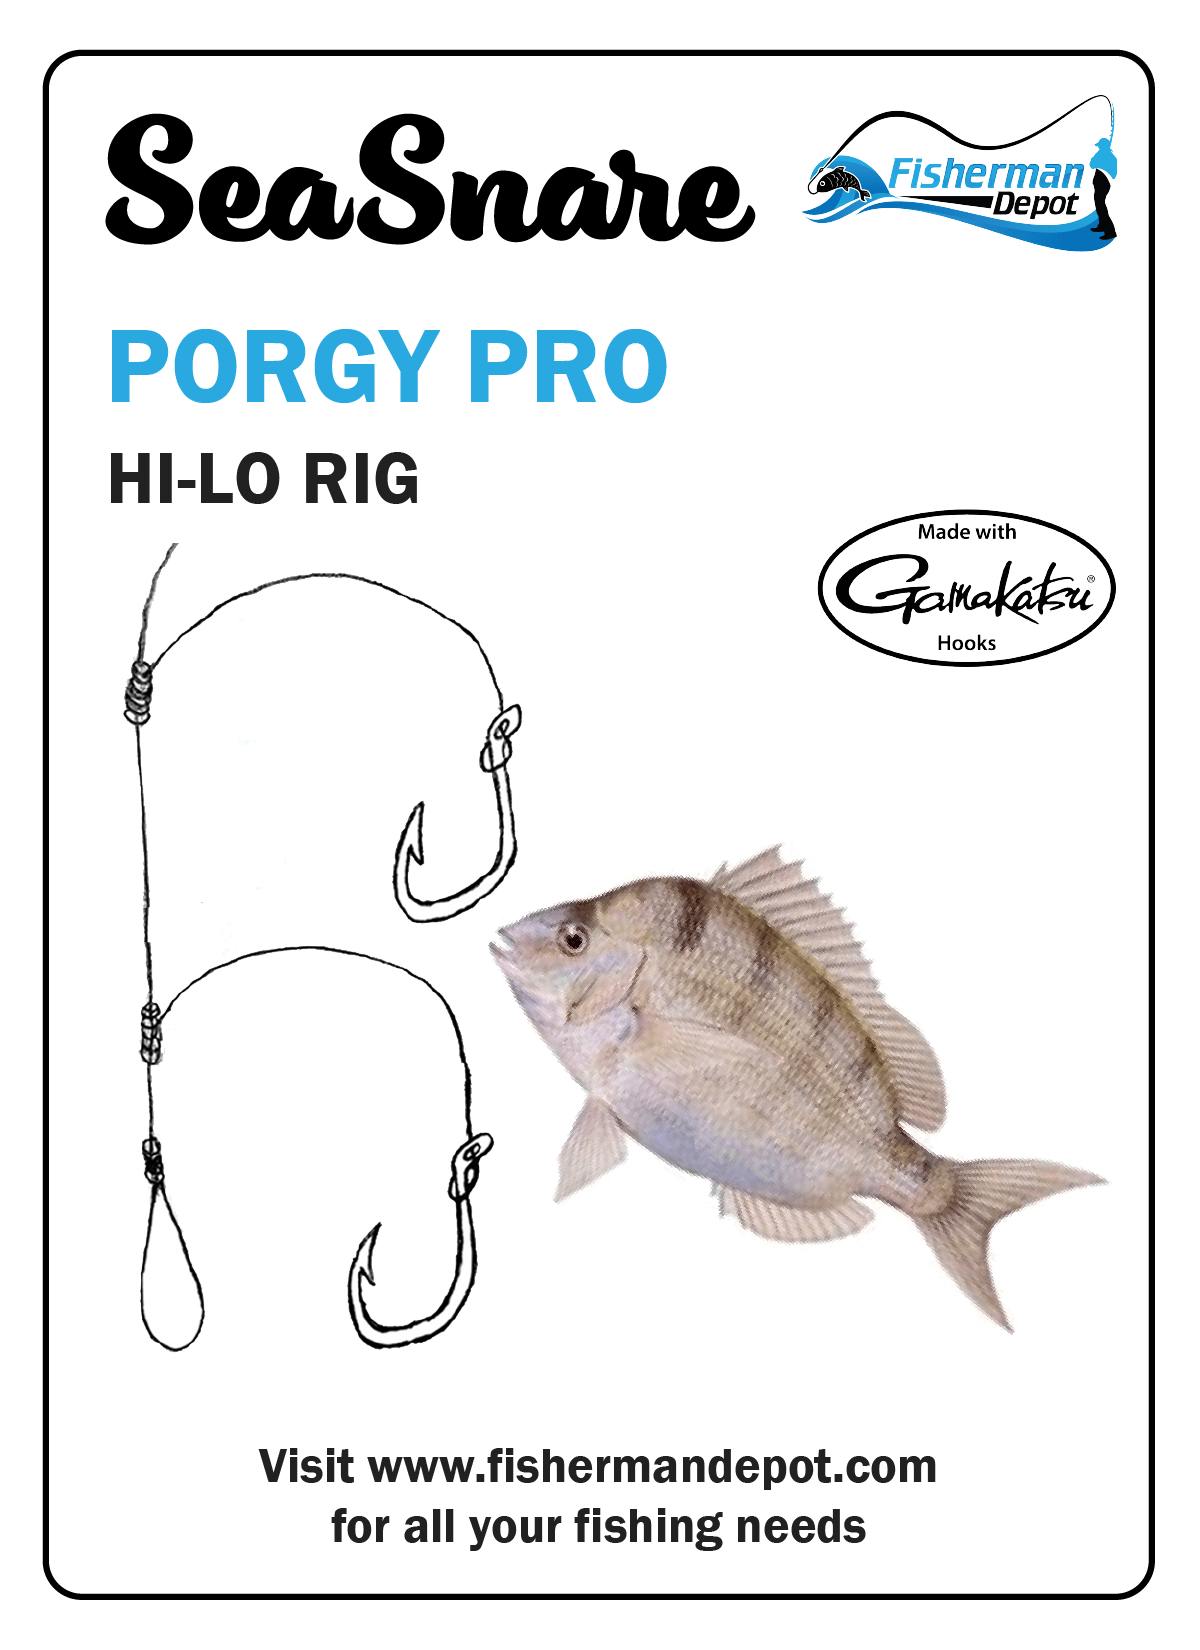 SeaSnare - Porgy Pro Hi-Lo Rig 6 / Pack / Gamakatsu / 2/0 Hook